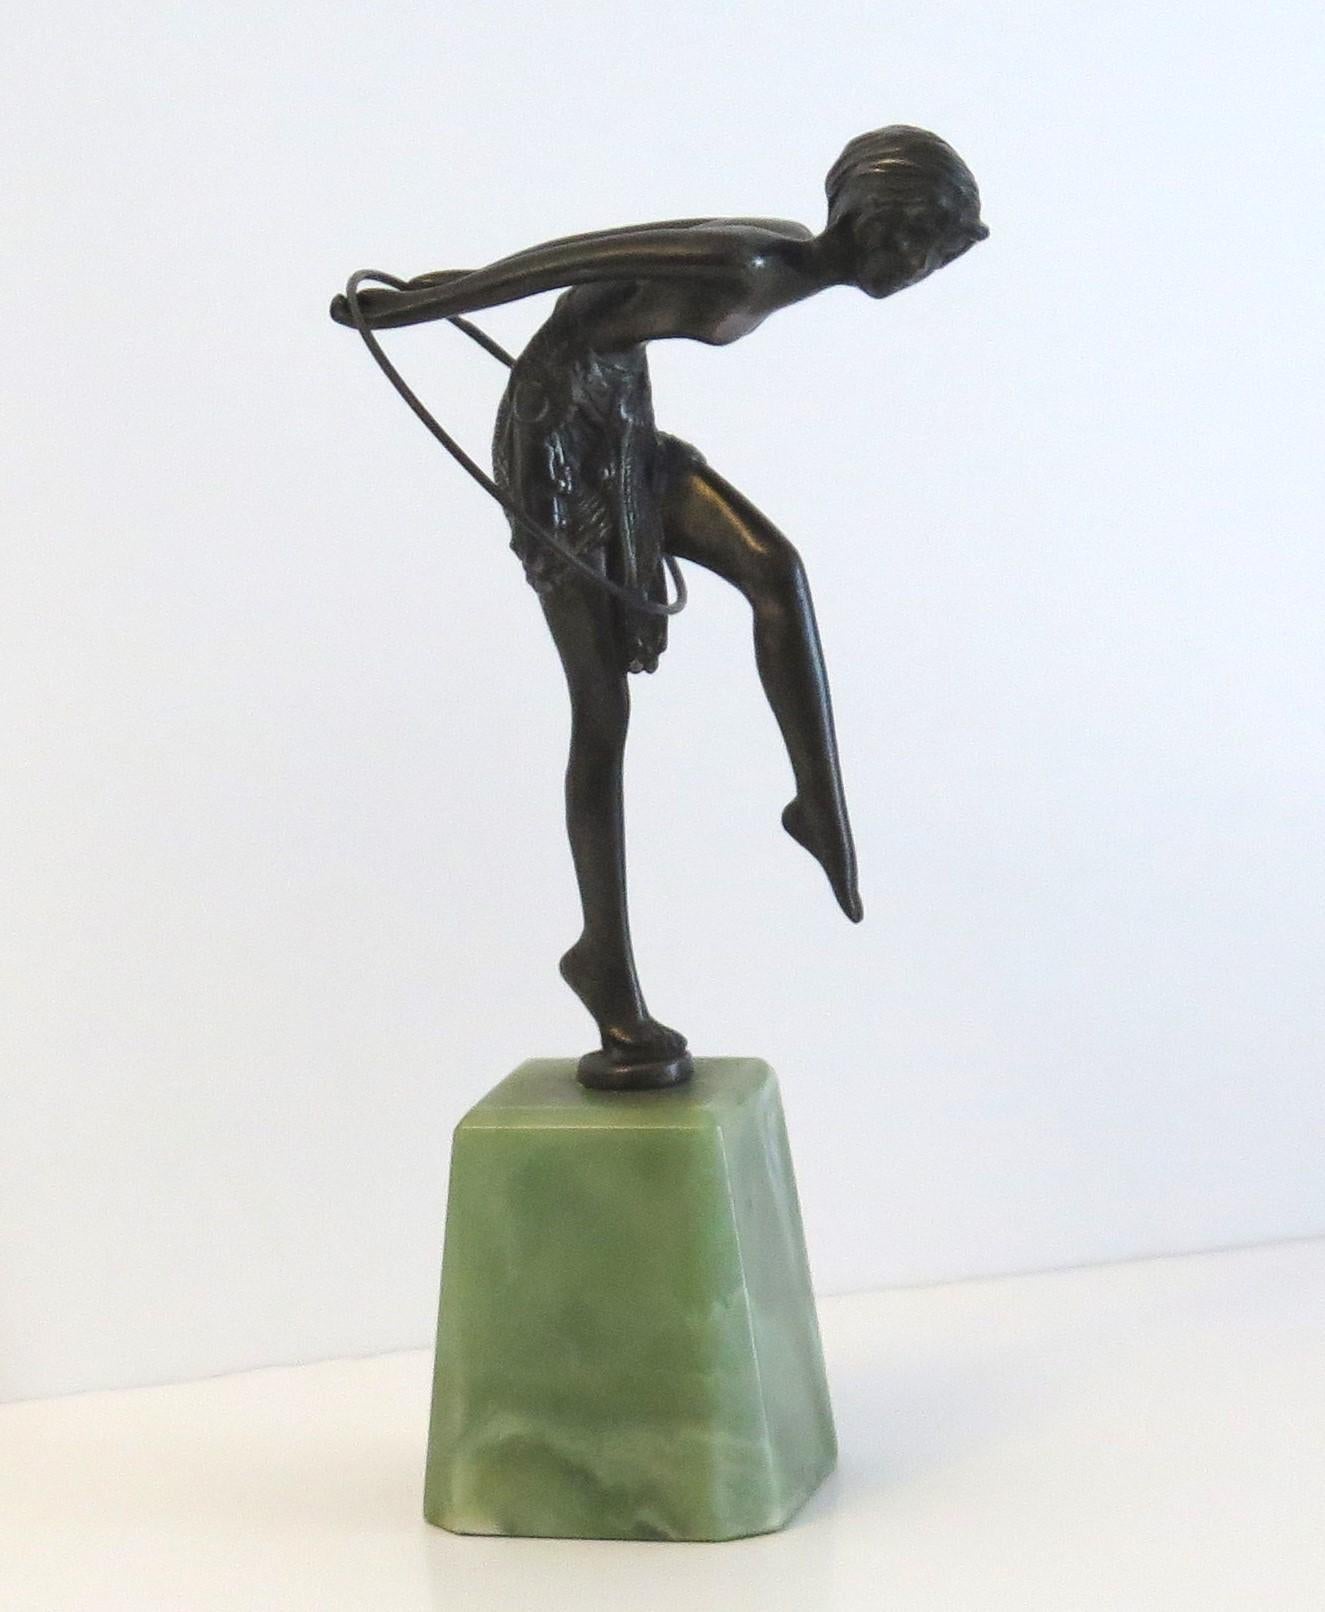 Es handelt sich um eine massive Bronzefigur einer tanzenden Dame, Hoop Girl genannt, nach D H Chiparus, auf einem Onyxsockel, aus der Zeit des Art Deco, ca. 1925 bis 1935.

Die Figur ist wunderschön und sehr detailliert modelliert - siehe Rock und